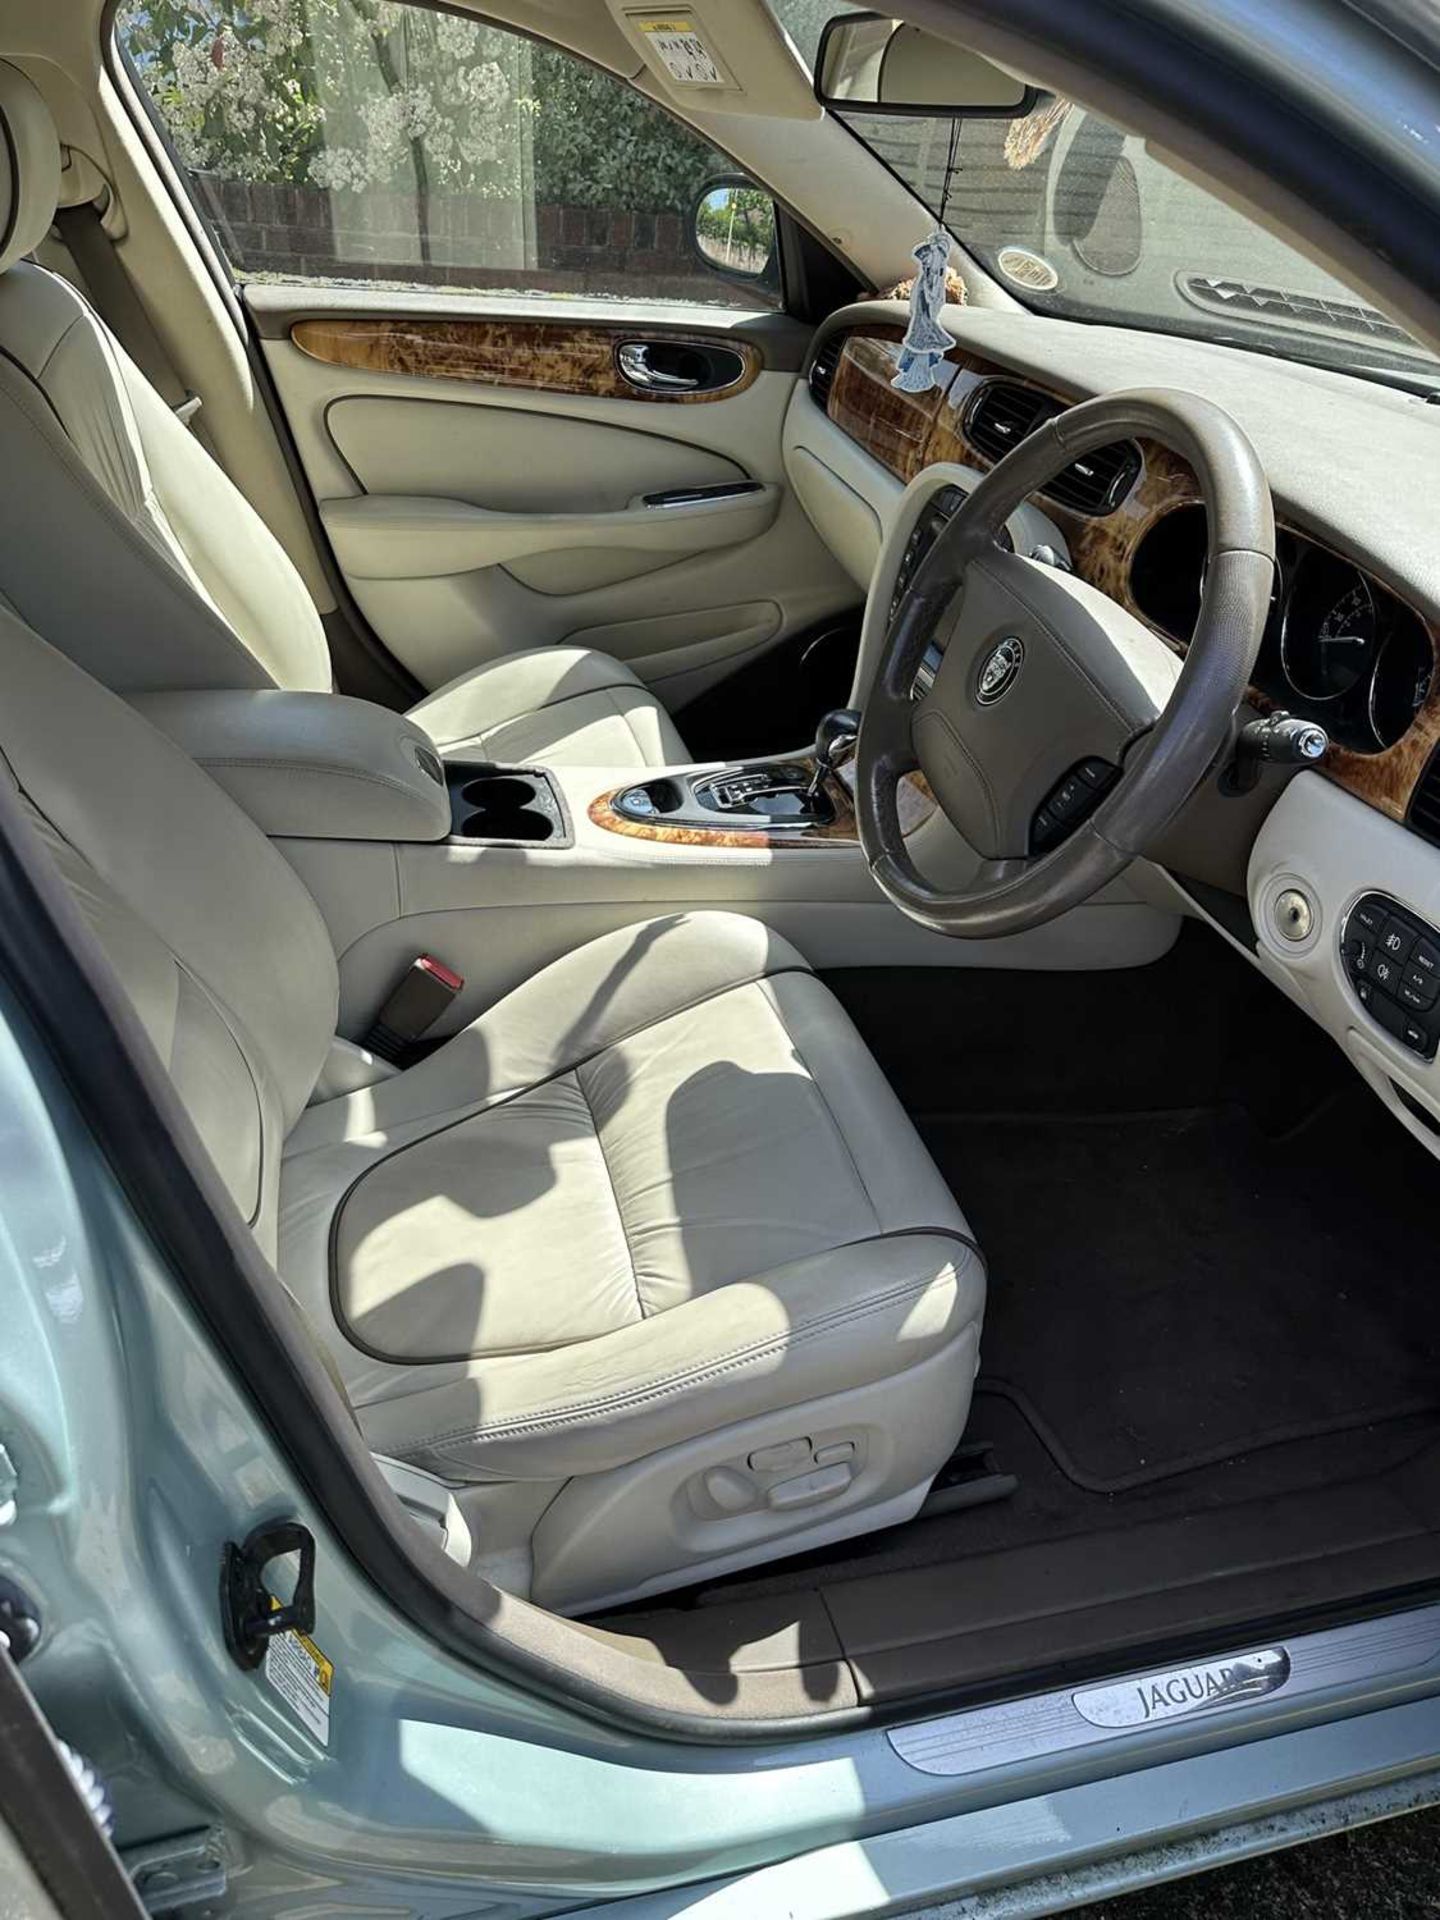 2006 Jaguar XJ8 V8 Sovereign Auto, 4 Door Saloon - Image 22 of 26